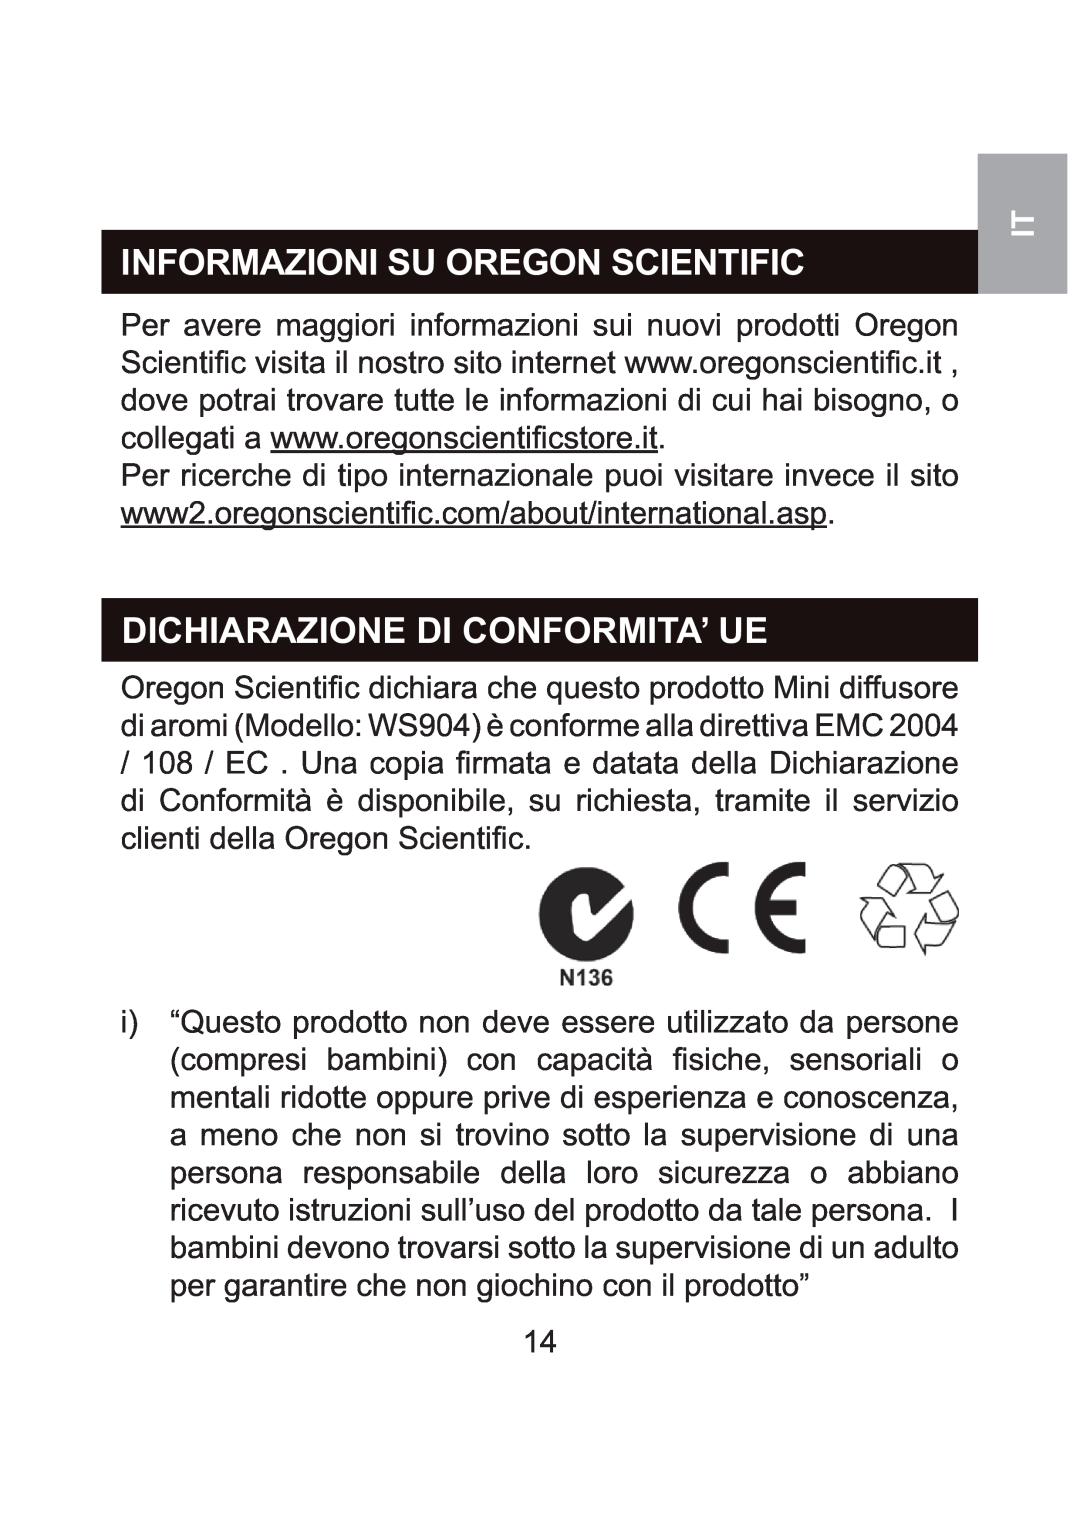 Oregon Scientific WS904 user manual Informazioni Su Oregon Scientific, Dichiarazione Di Conformita’ Ue 